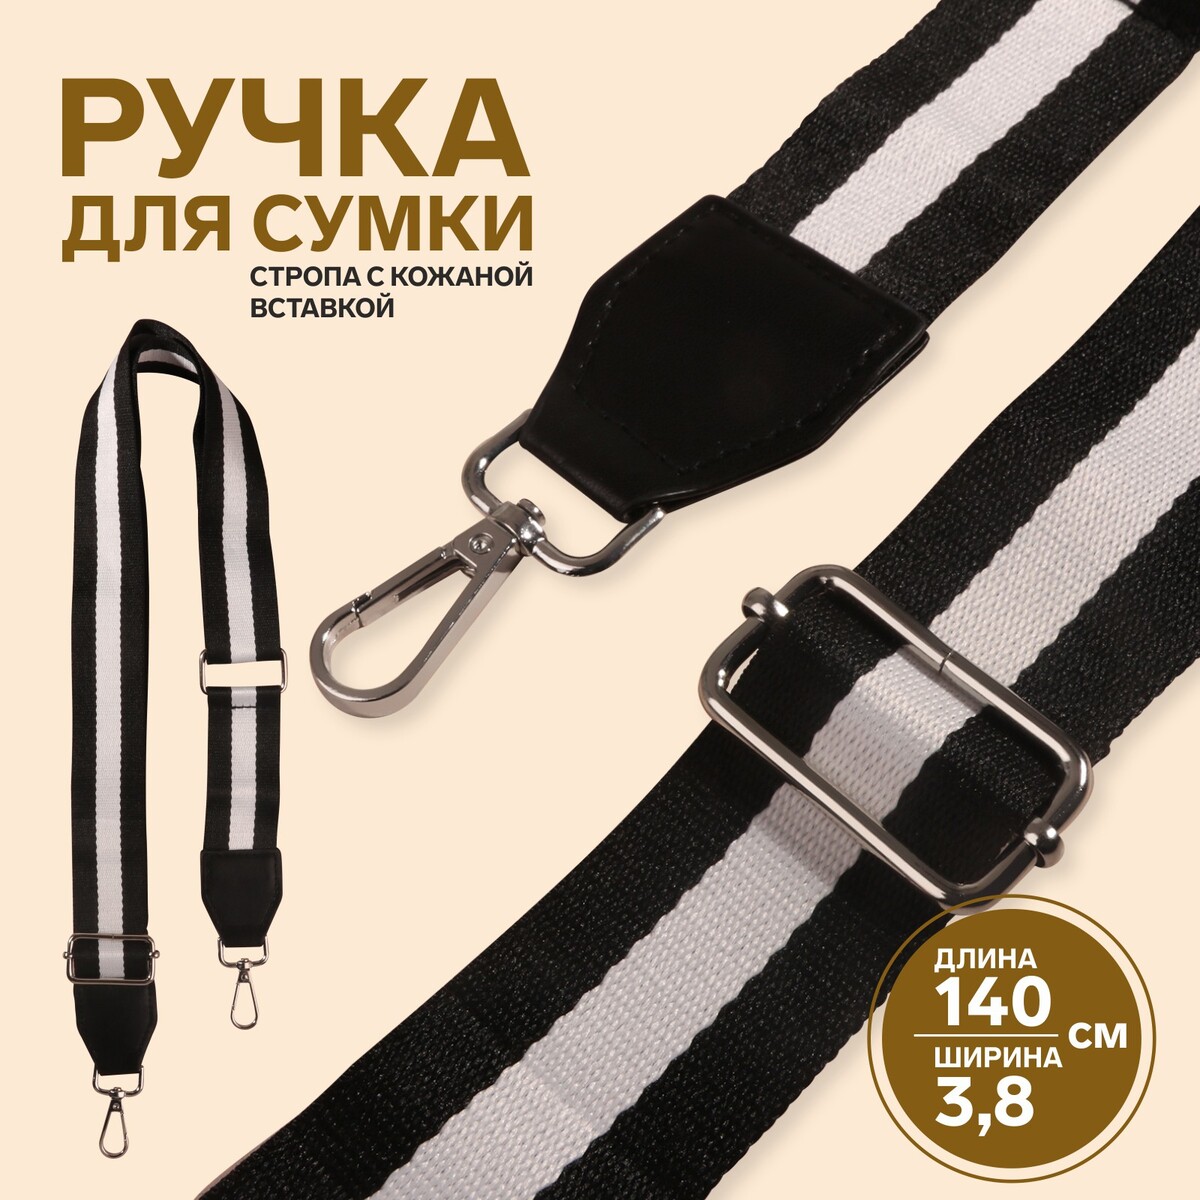 Ручка для сумки, стропа с кожаной вставкой, 140 × 3,8 см, цвет черный/белый грабли со вставкой